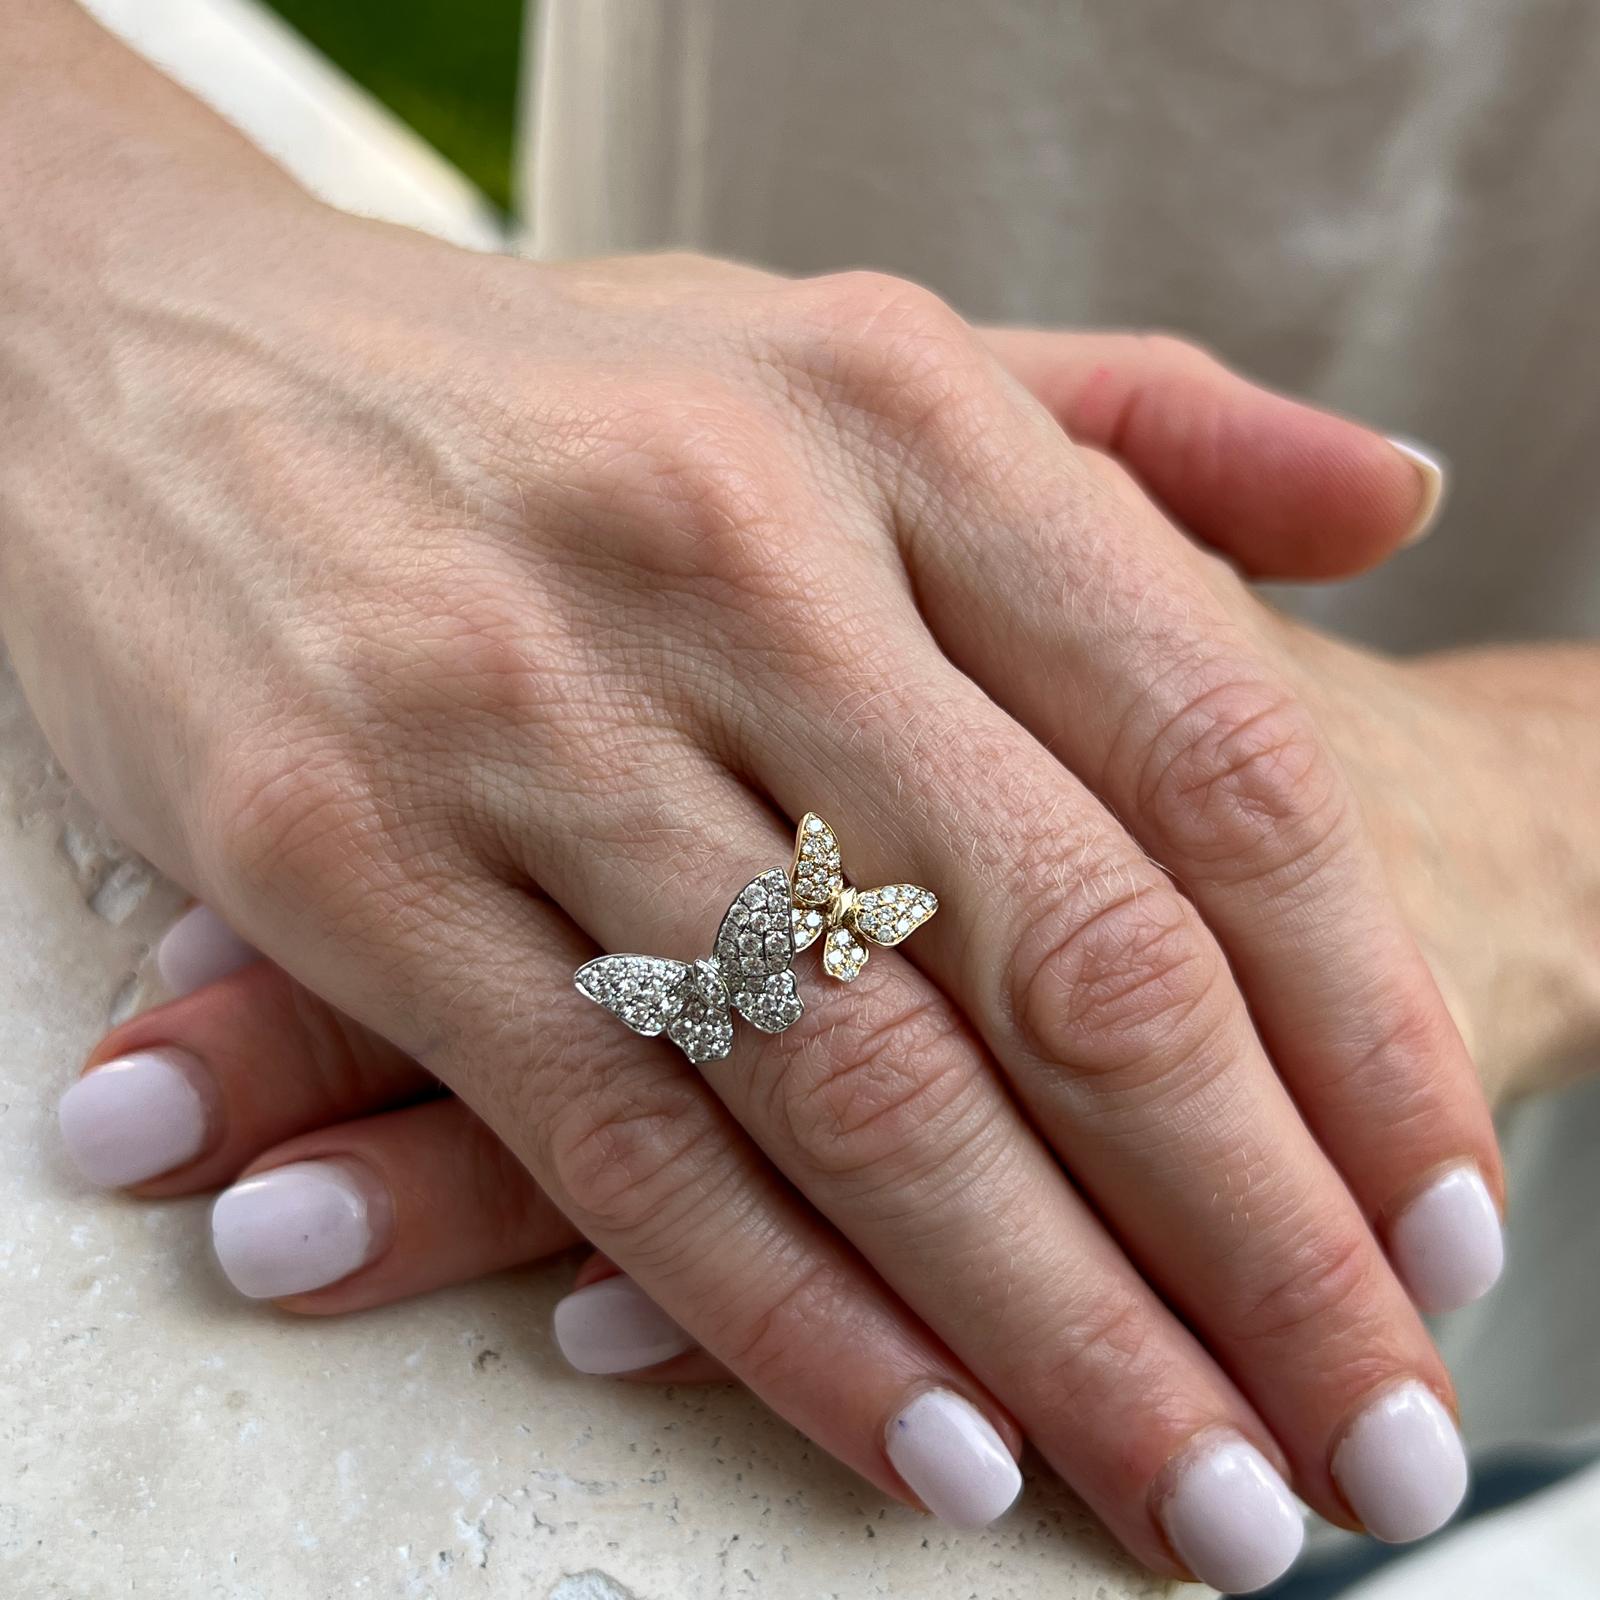 Diamant-Butterfly-Ring aus 18 Karat Weiß- und Gelbgold. Der Ring zeigt zwei Schmetterlinge, die mit runden Diamanten im Brillantschliff mit einem Gesamtgewicht von ca. 0,85 Karat besetzt sind. Die Diamanten sind von der Farbe G-H und der Reinheit